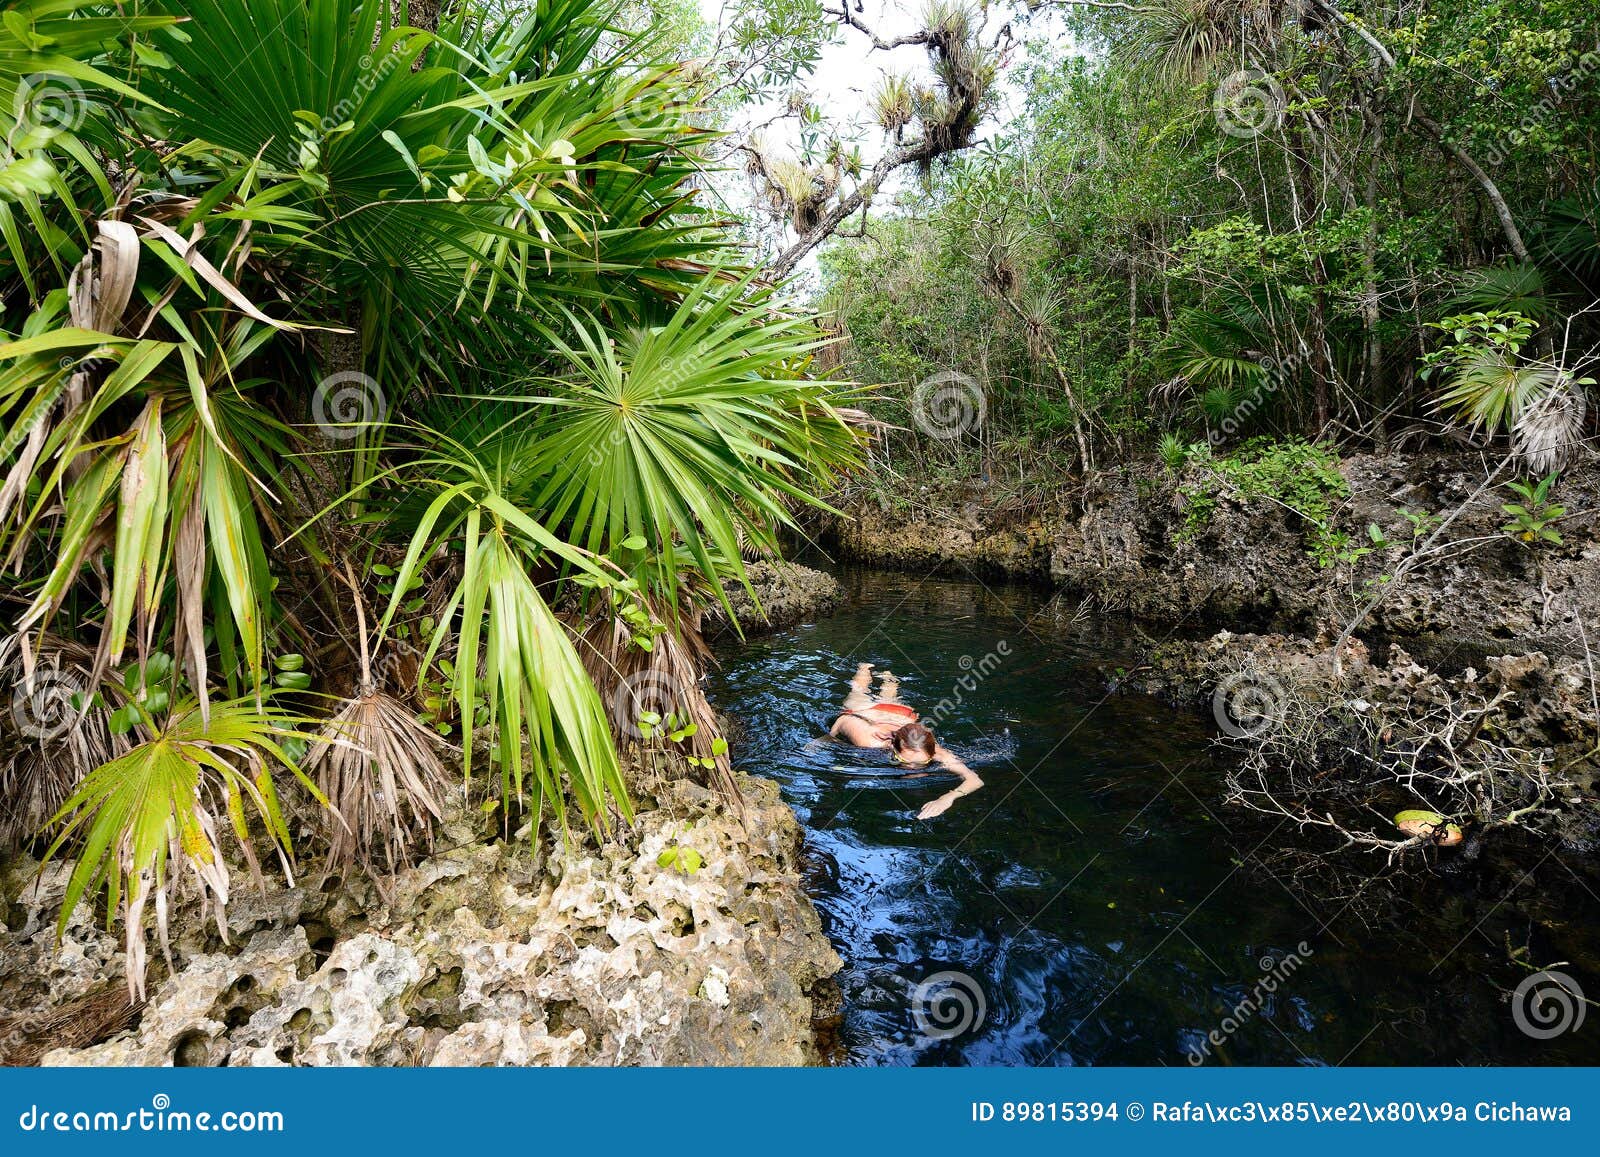 cuban cenotes - cueva de los peces near giron beach